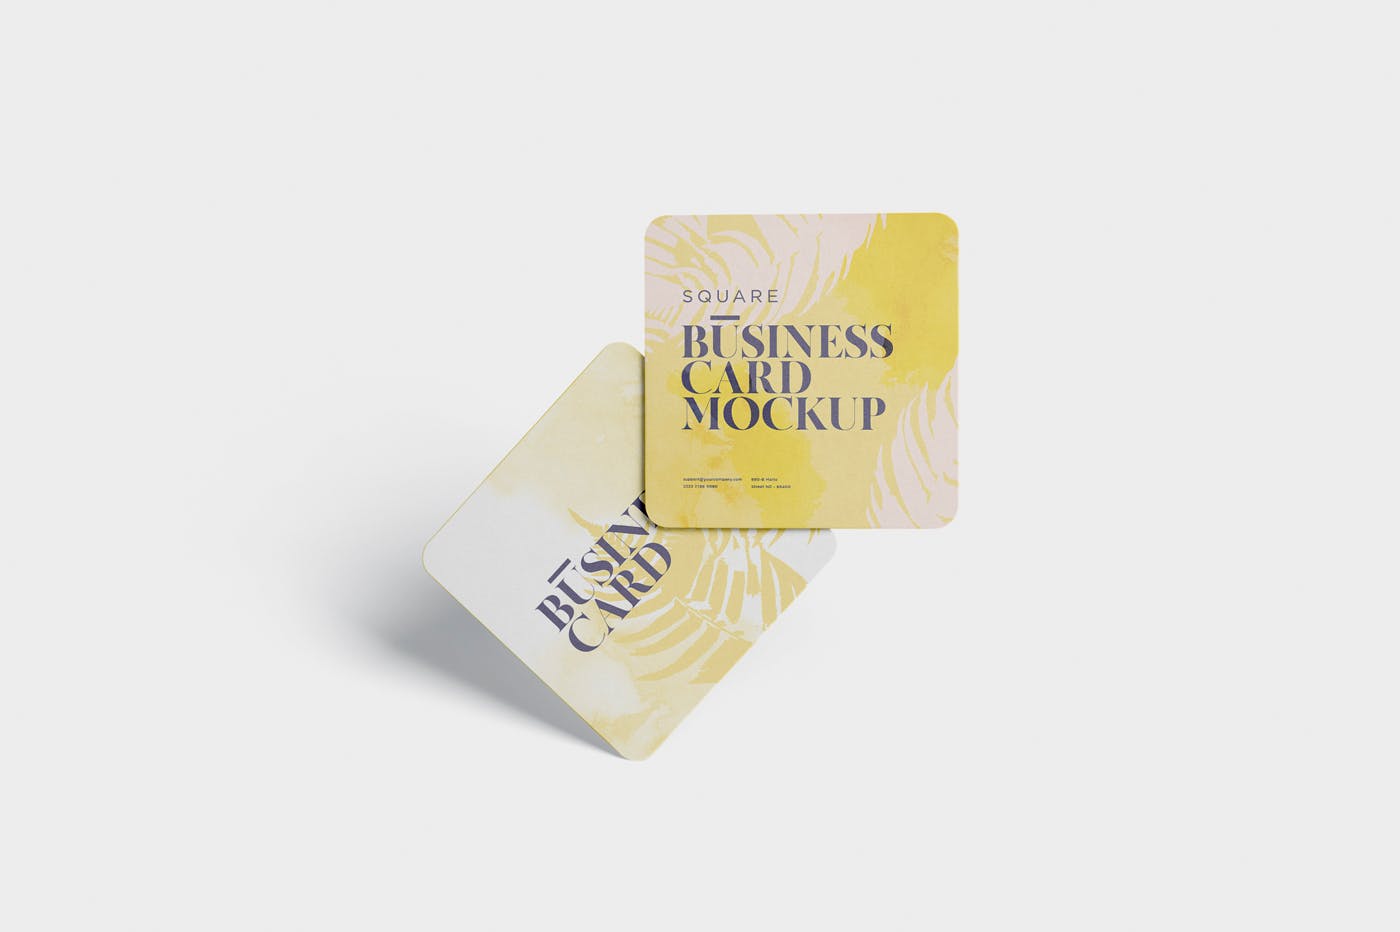 圆角设计风格企业名片效果图16设计网精选 Business Card Mockup – Square Round Corner插图(2)